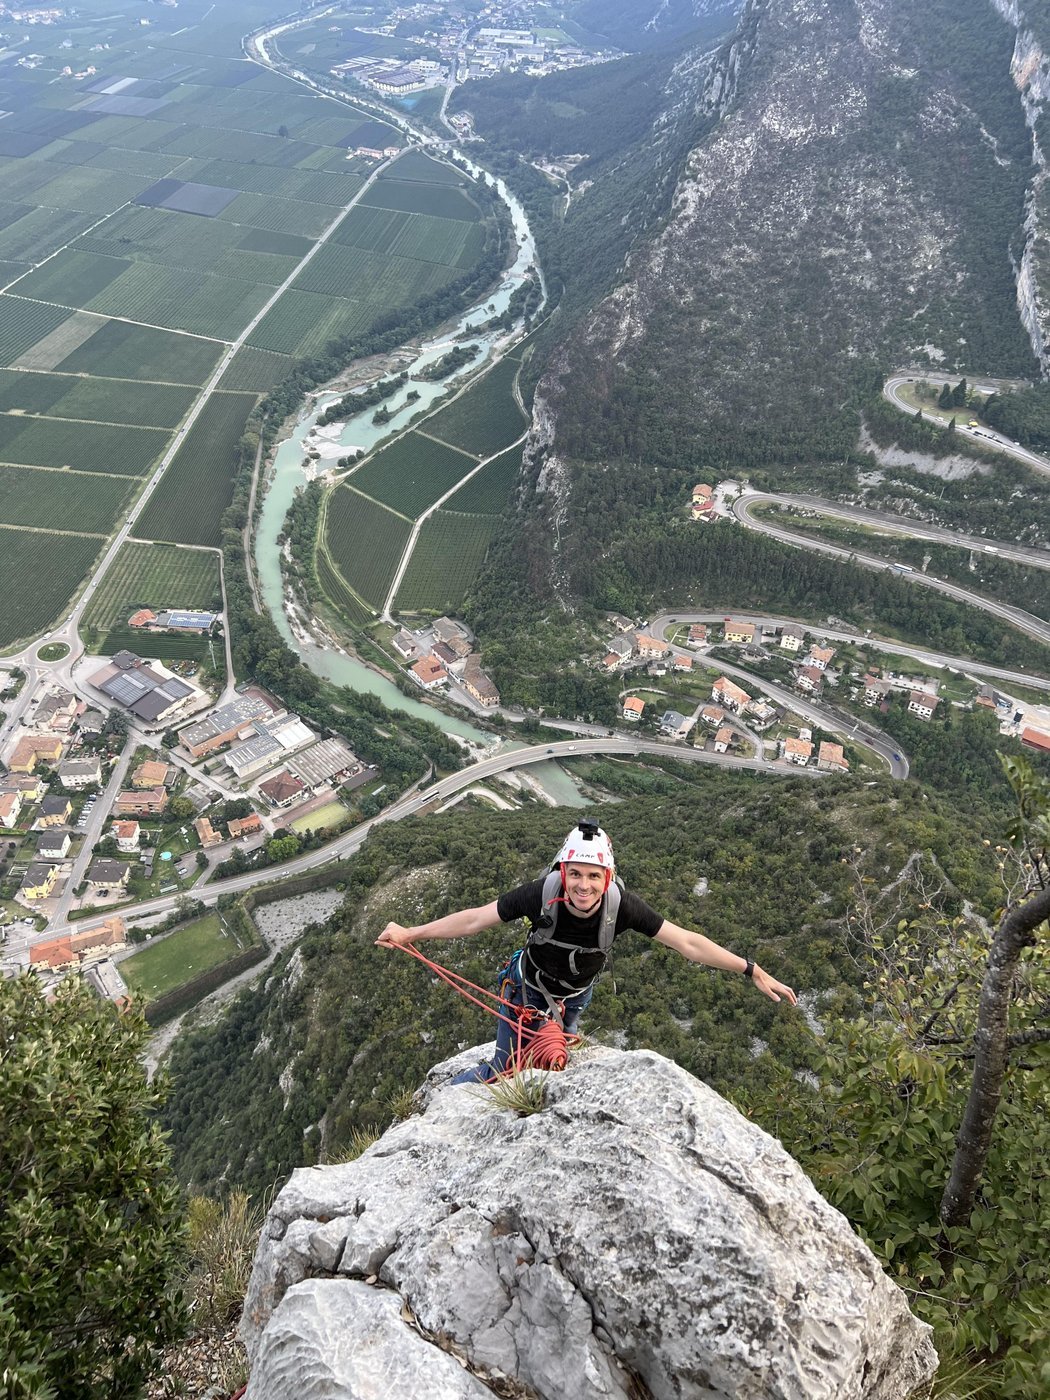 Вершина мультипитча “Странные желания Амели” на скале “Маленькая лань” в Арко, Италия 